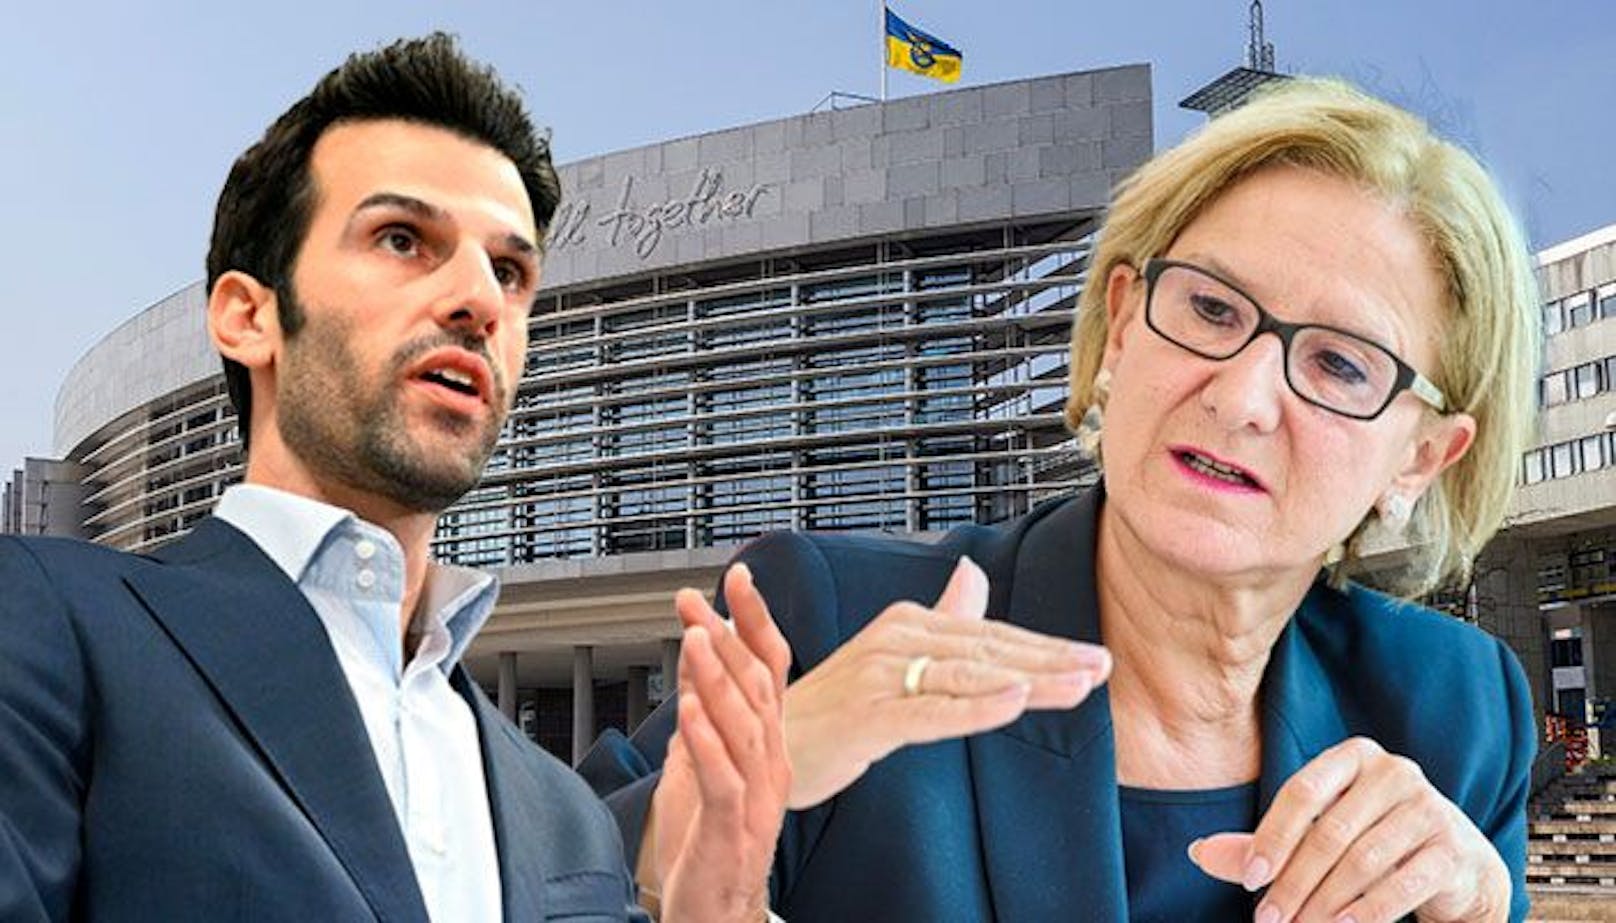 FPÖ-Spitzenkandidat Udo Landbauer und die amtierende Landeshauptfrau von Niederösterreich, Johanna Mikl-Leitner (ÖVP